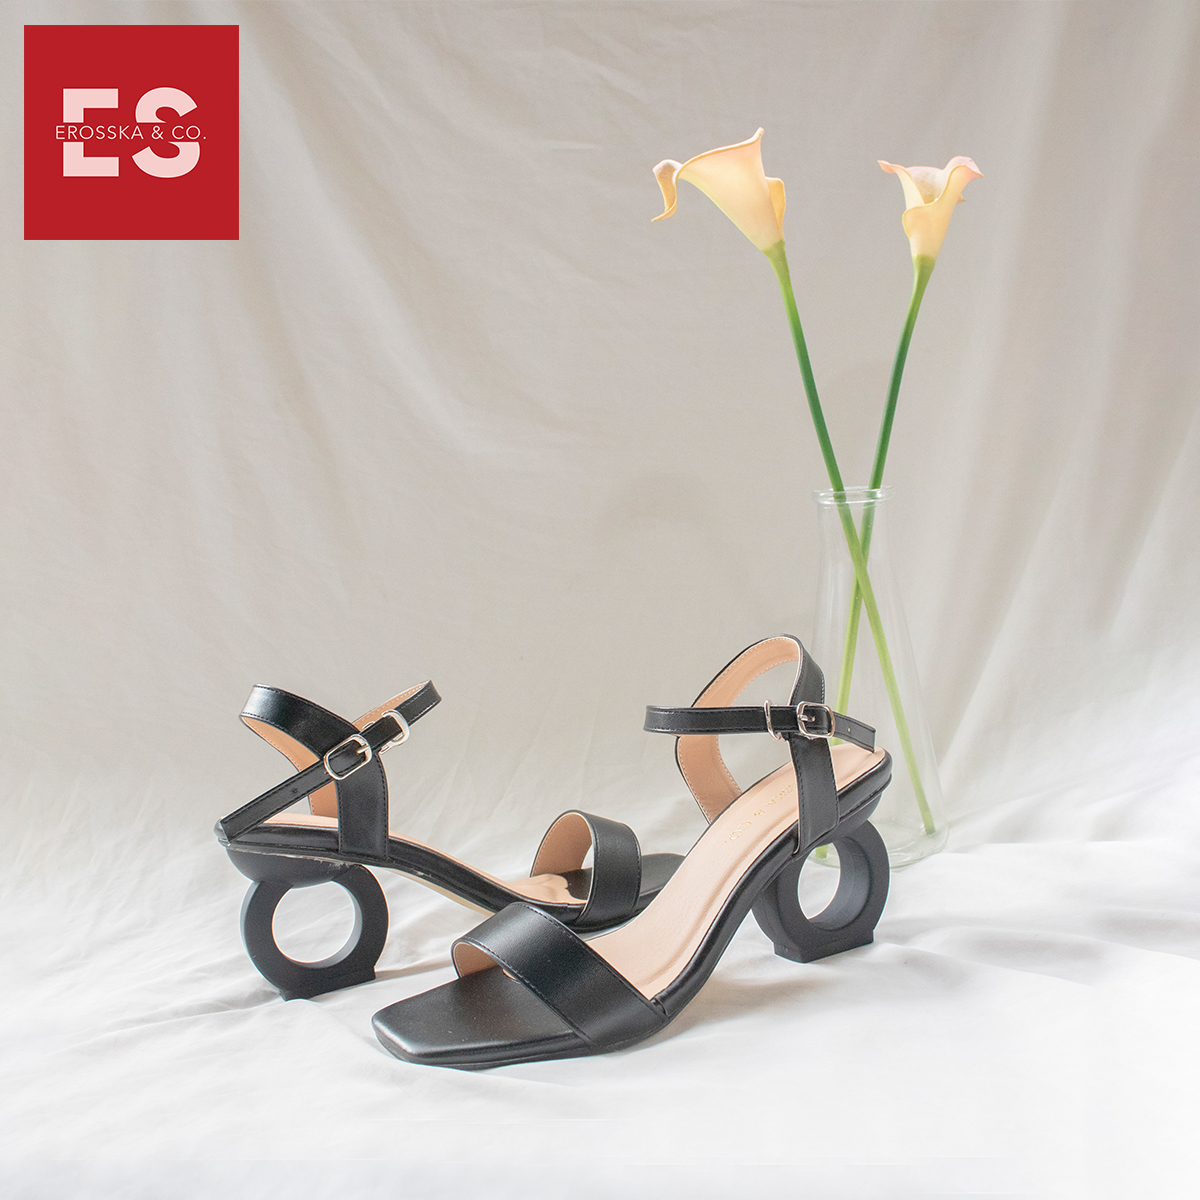 Giày sandal cao gót Erosska thời trang hở mũi phối dây thiết kế sang trọng cao 7cm EB009